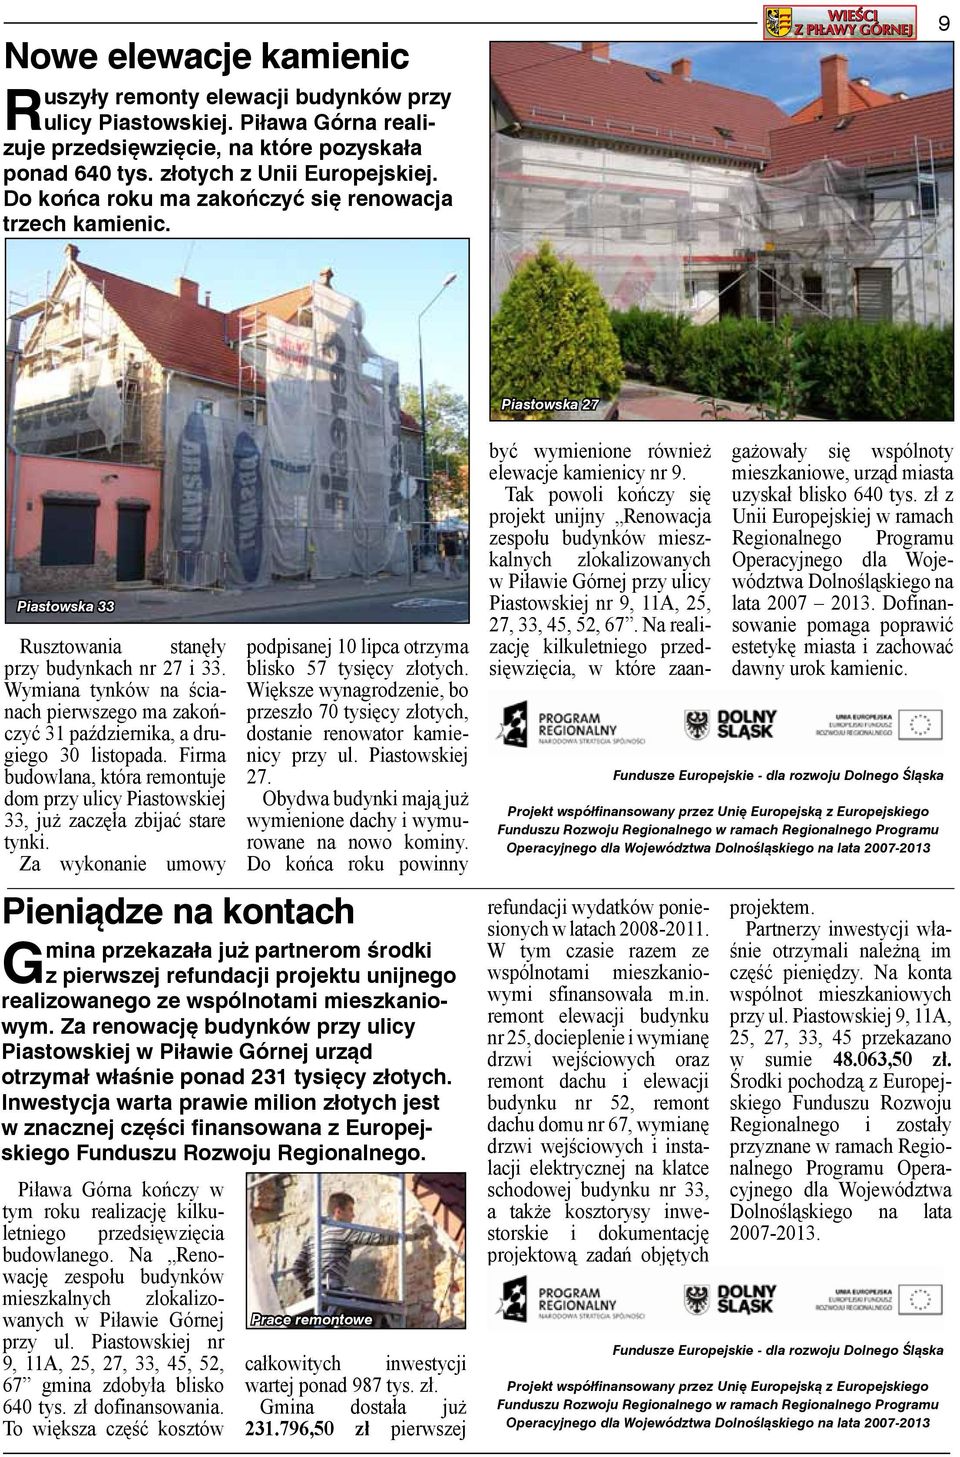 Wymiana tynków na ścianach pierwszego ma zakończyć 31 października, a drugiego 30 listopada. Firma budowlana, która remontuje dom przy ulicy Piastowskiej 33, już zaczęła zbijać stare tynki.